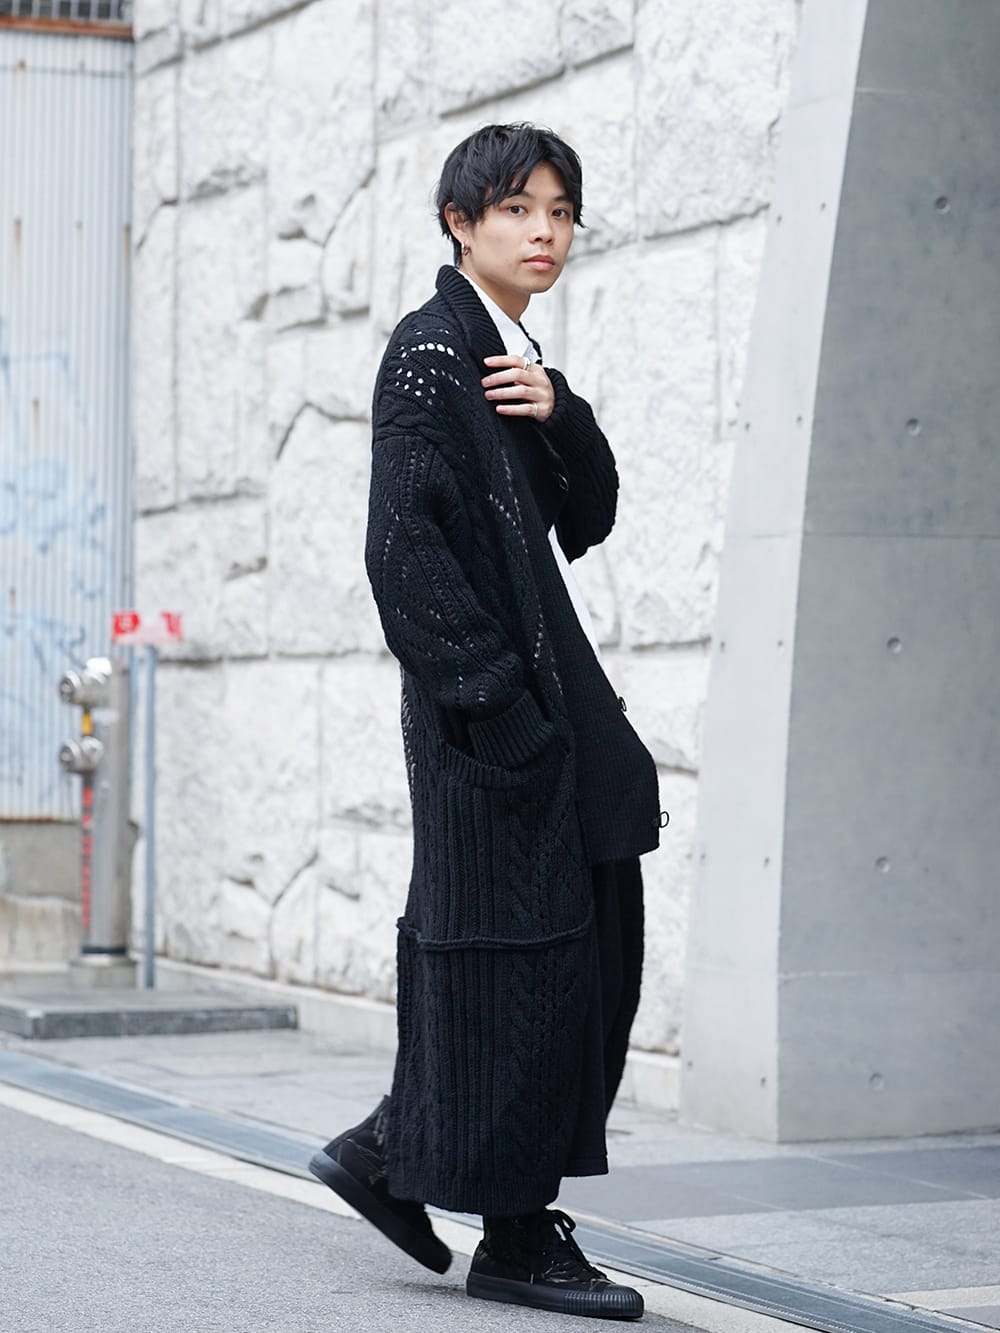 Yohji Yamamoto - ヨウジヤマモト 19-20AW Style featuring a knitted 